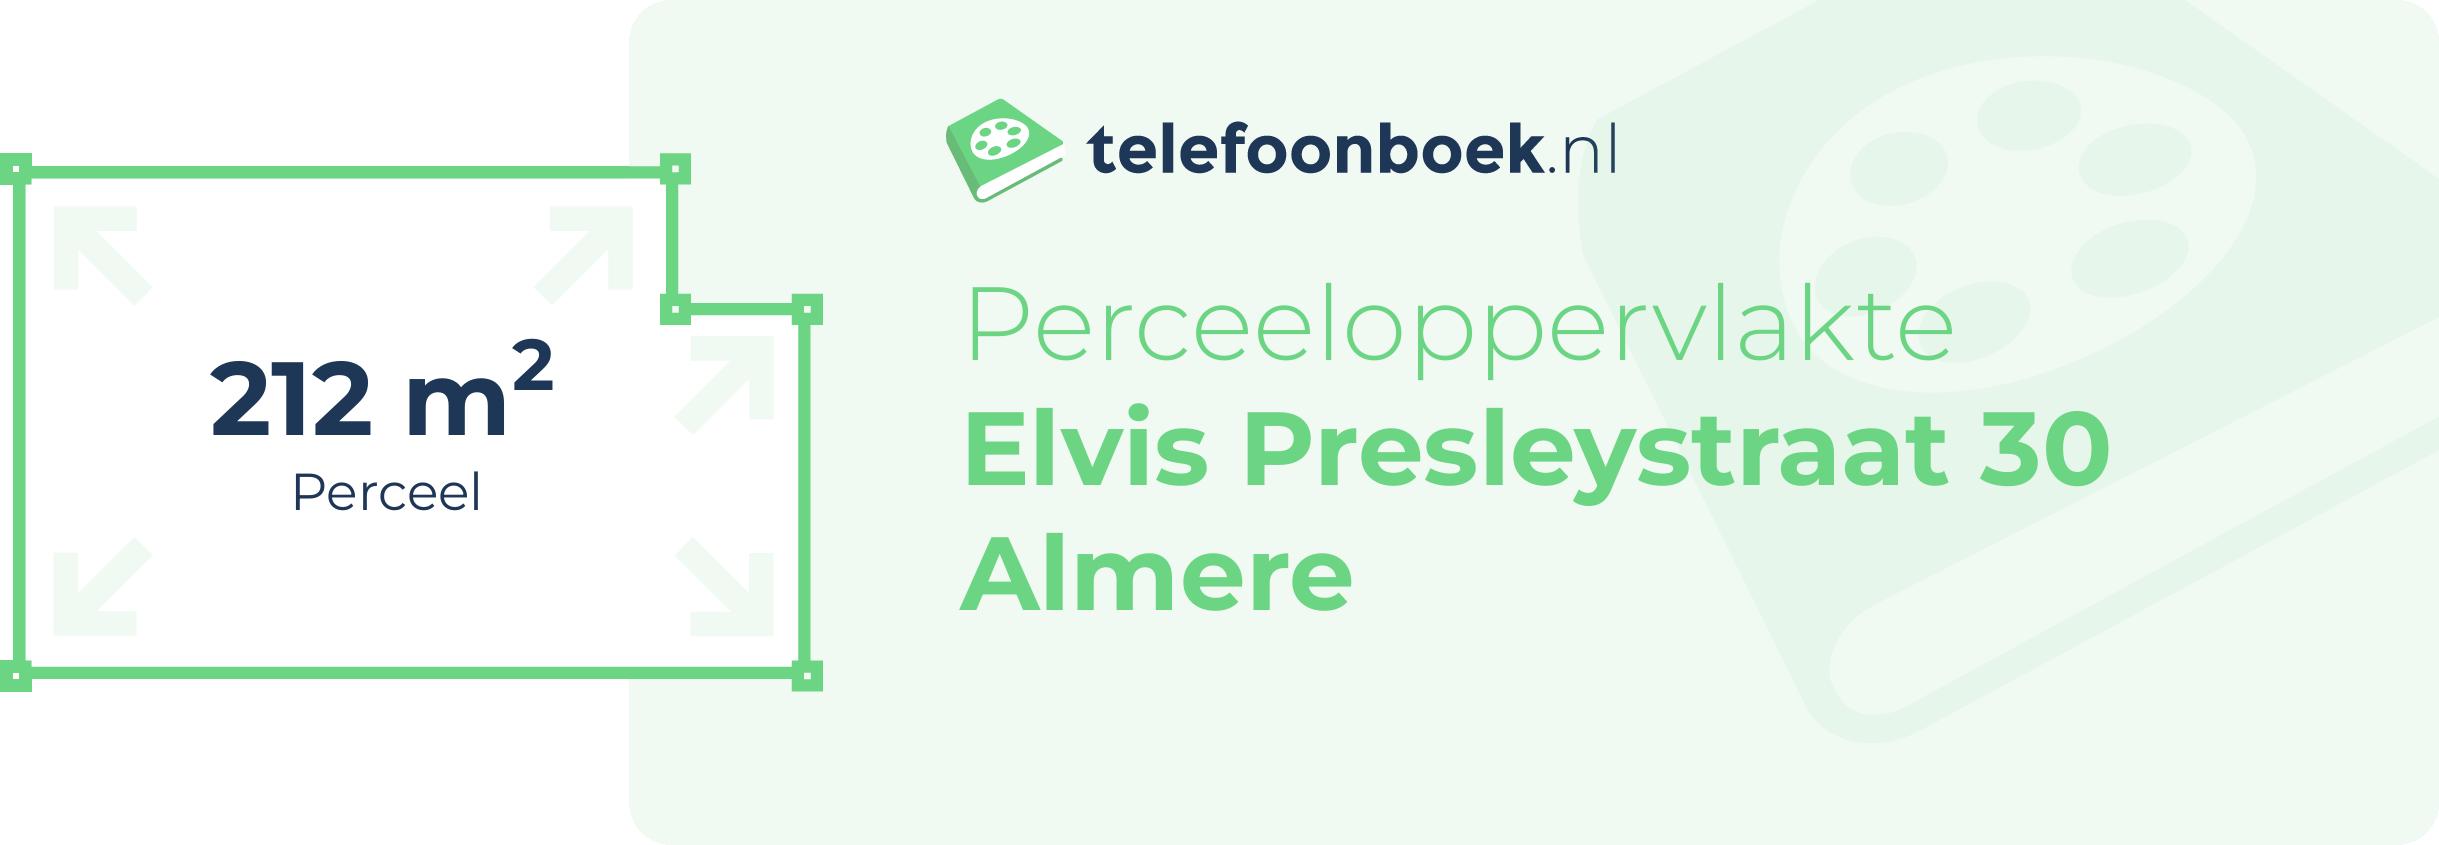 Perceeloppervlakte Elvis Presleystraat 30 Almere